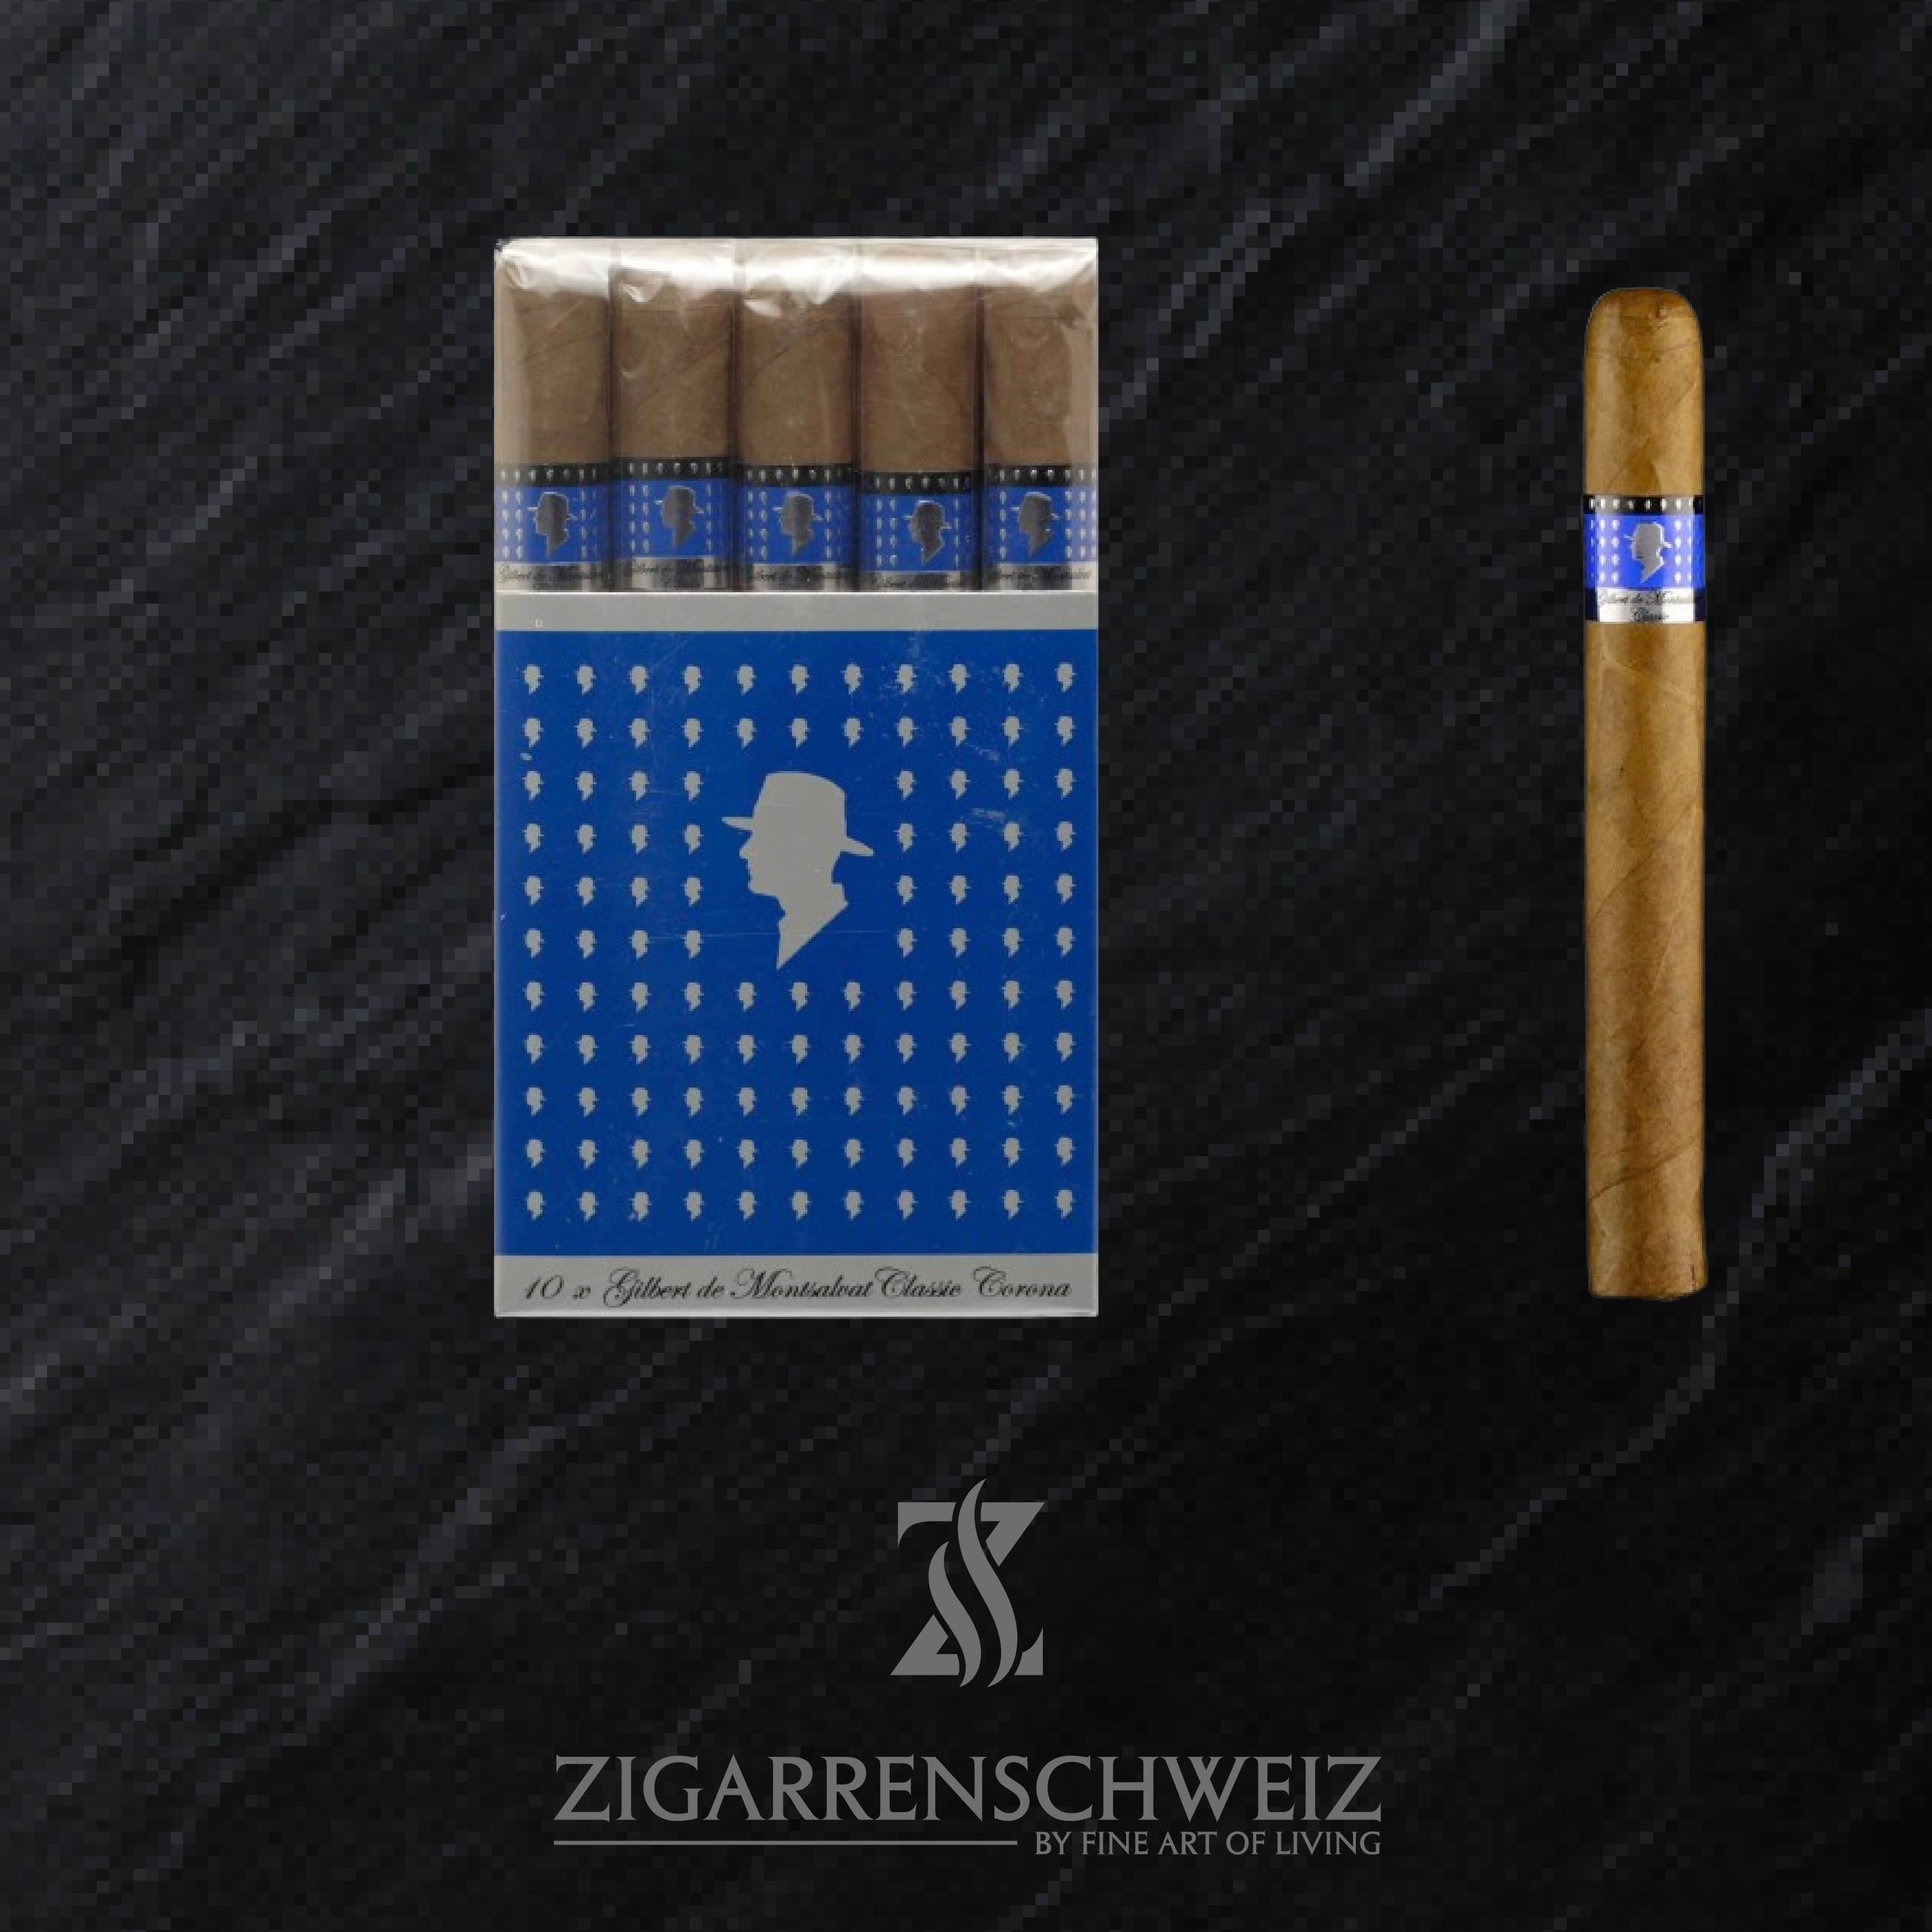 Gilbert de Montsalvat Classic Corona Zigarren Bundle